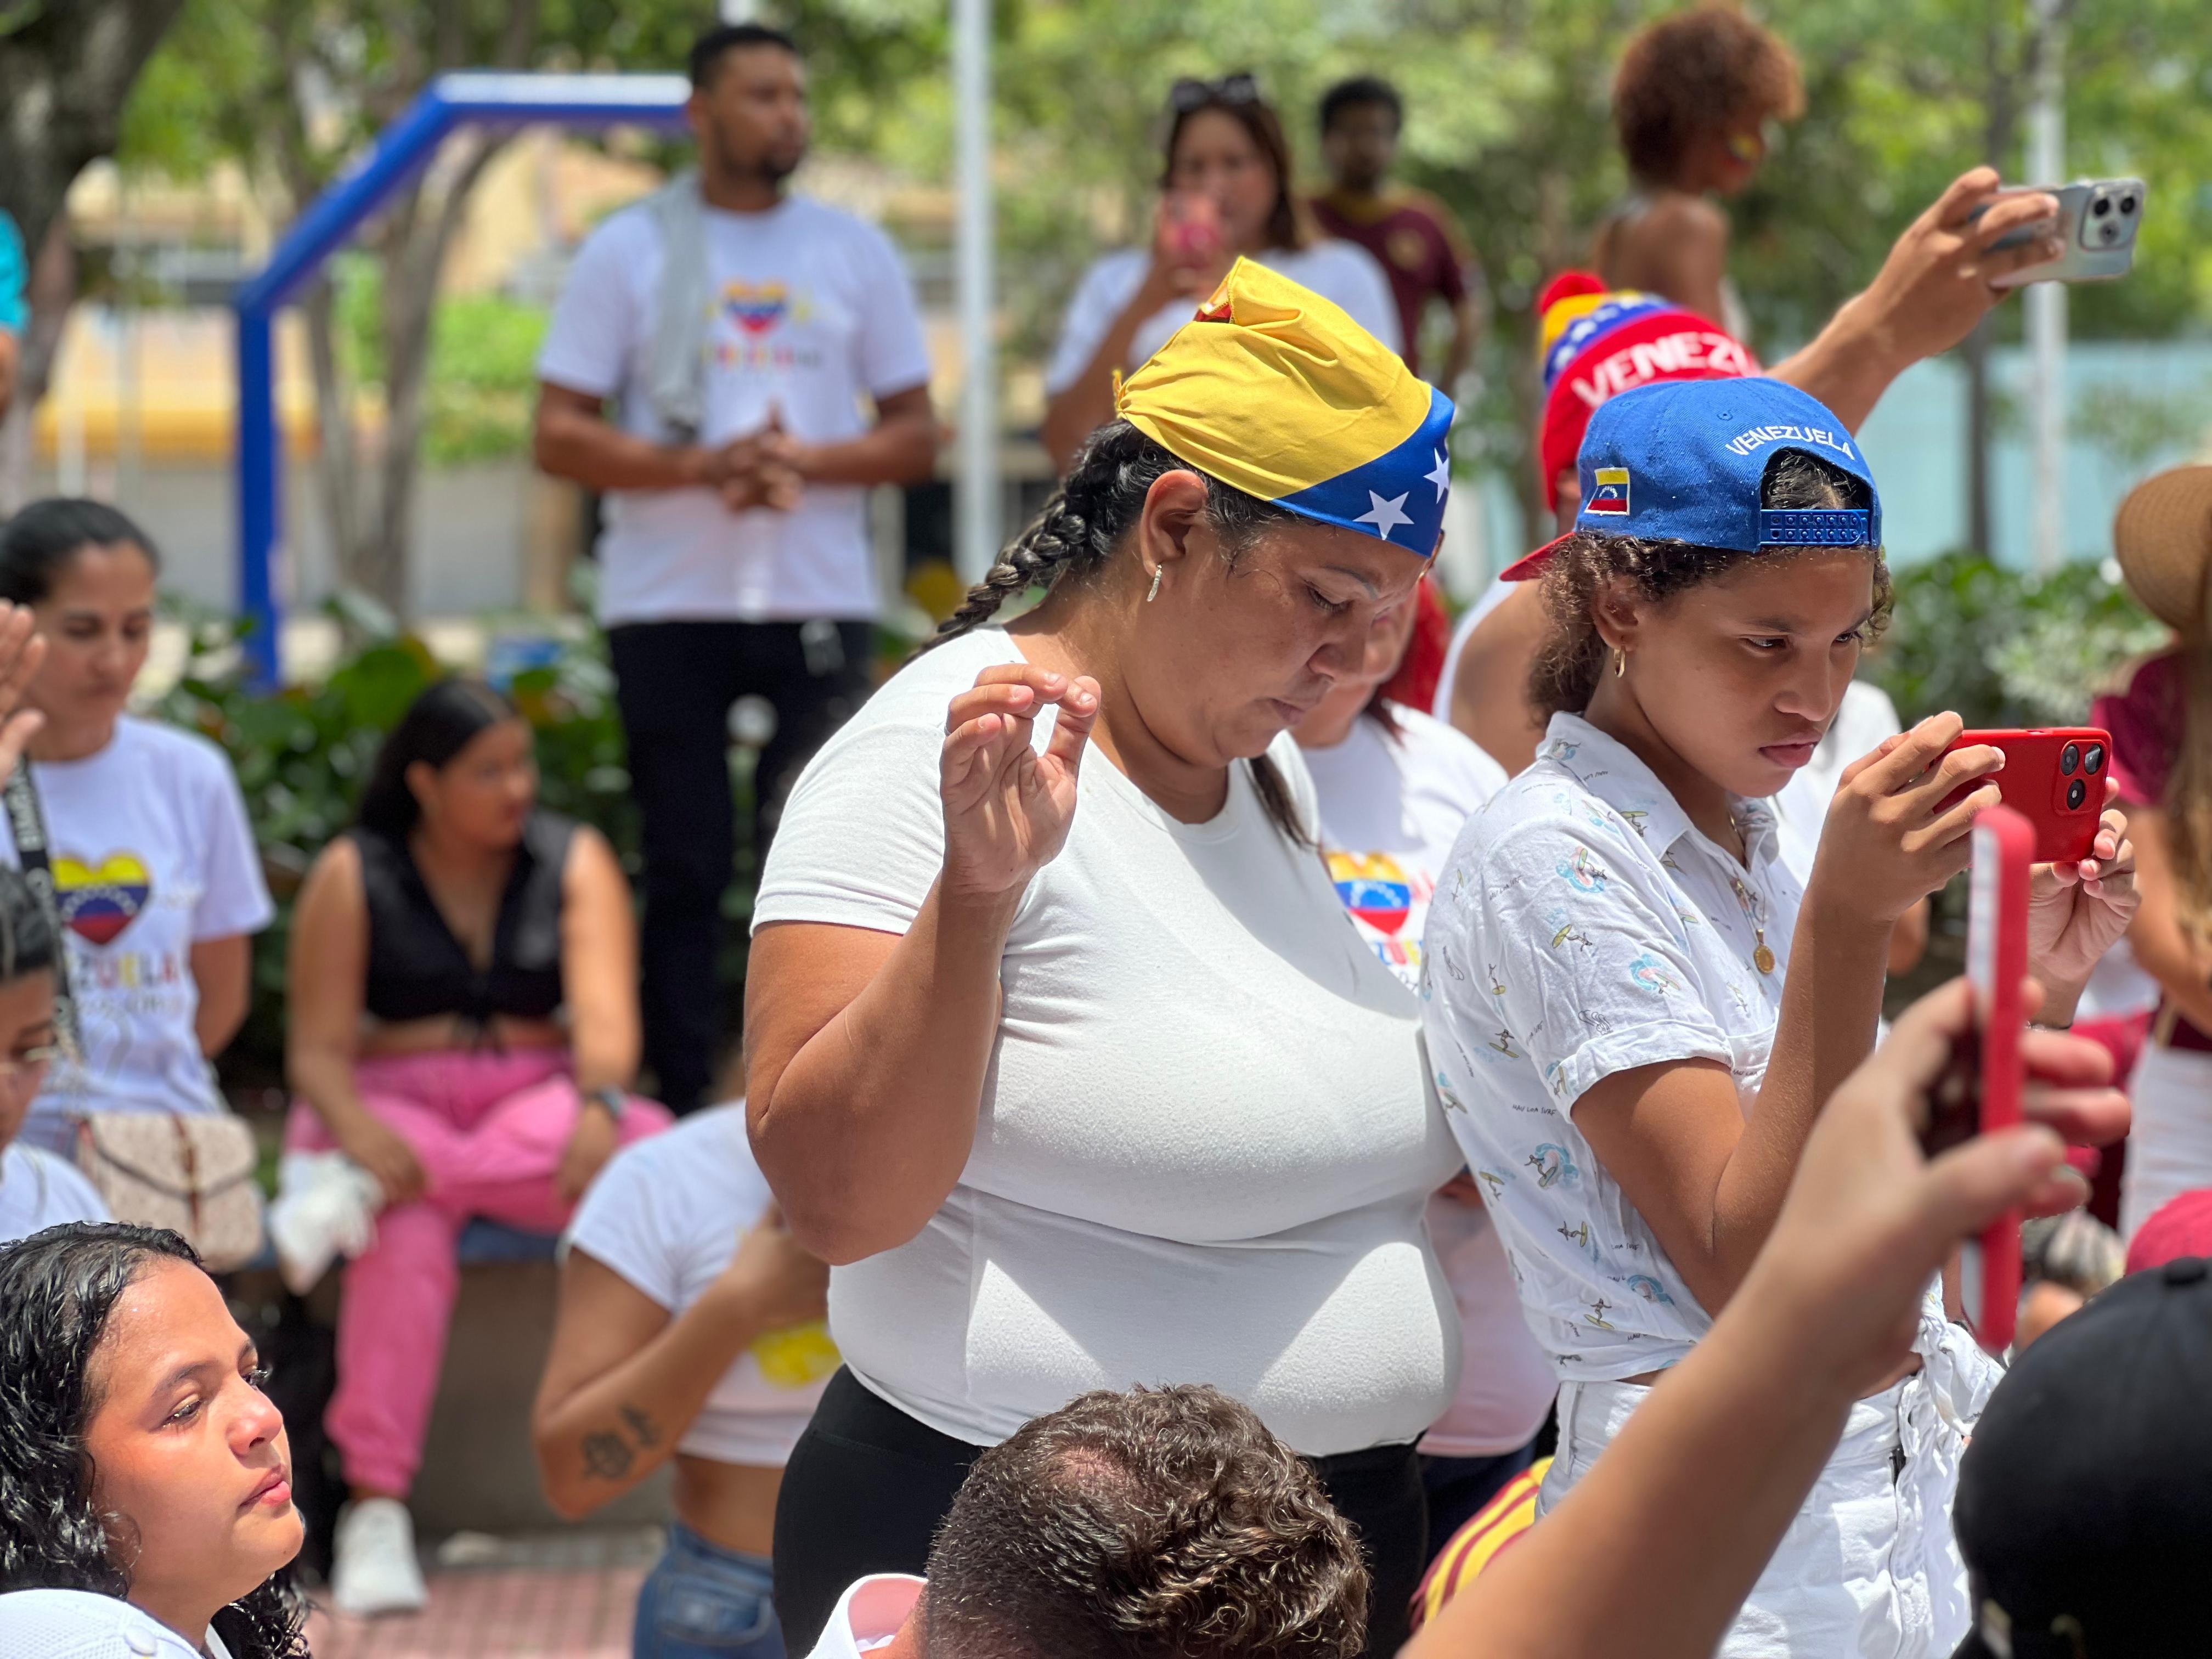 Oración de venezolanos en el parque Suri Salcedo en Barranquilla.